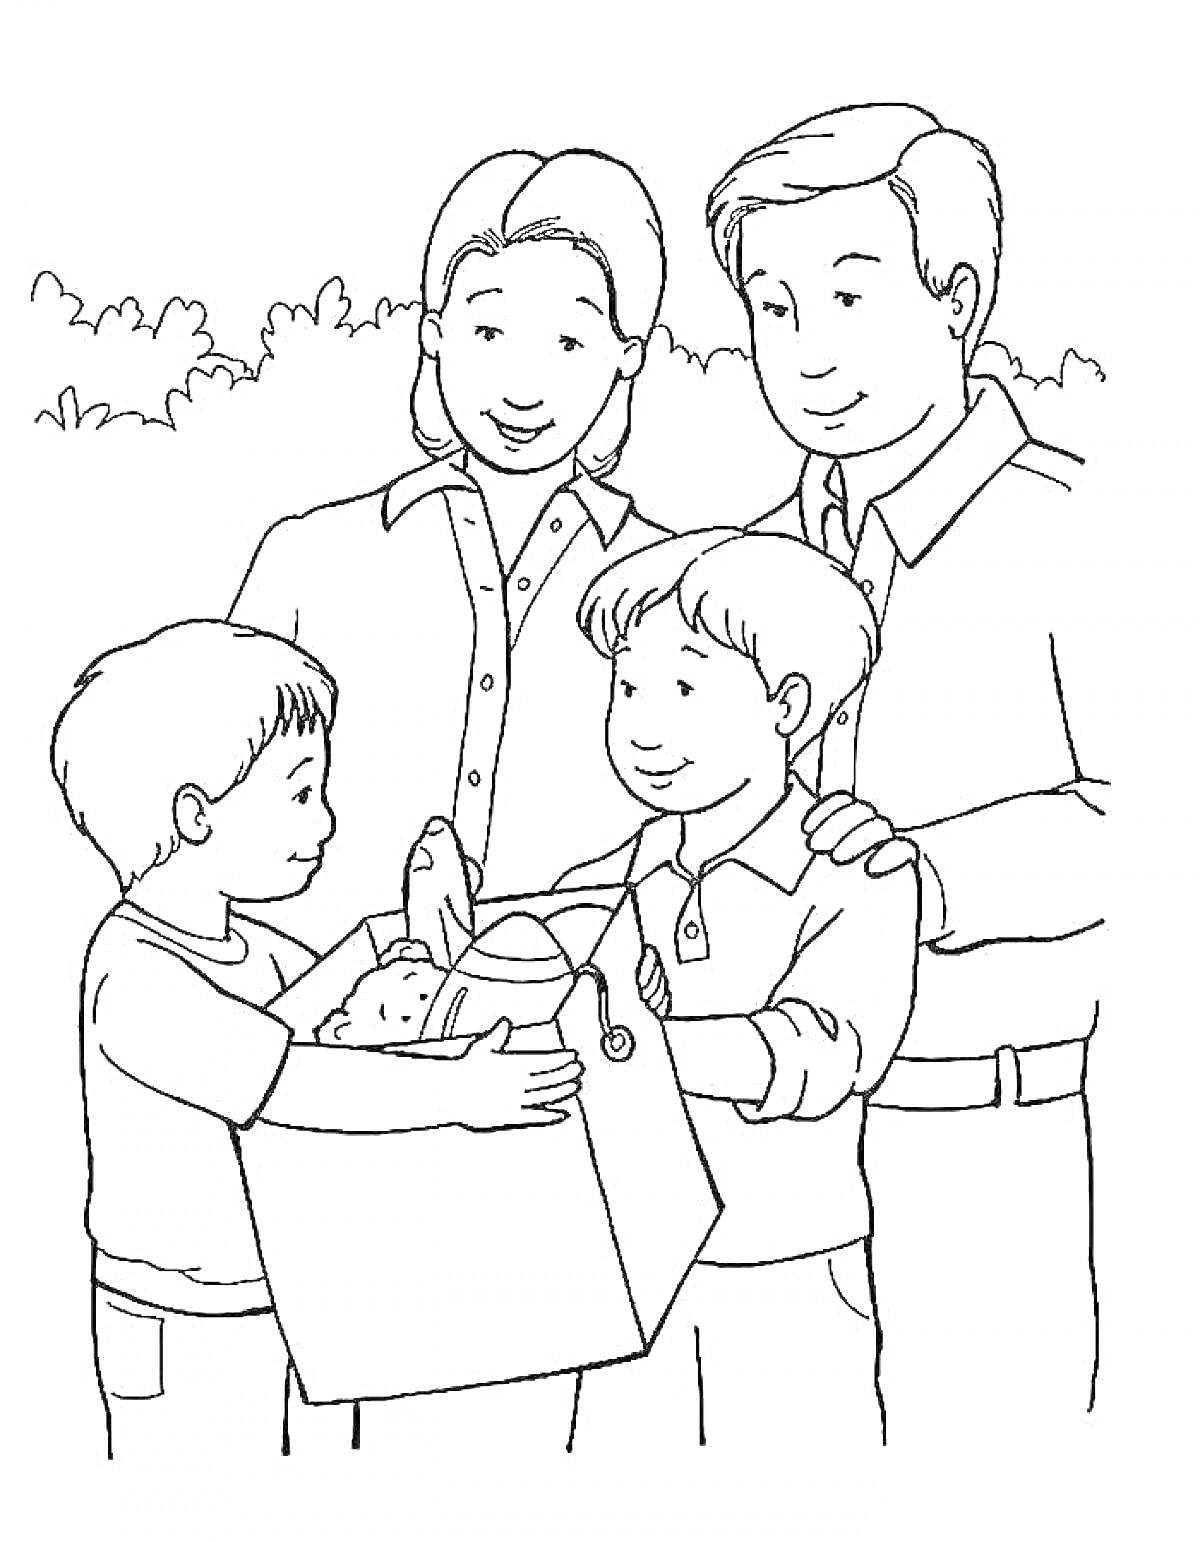 Раскраска Семья с детьми, старший ребенок держит коробку с маленьким щенком, родители смотрят и улыбаются